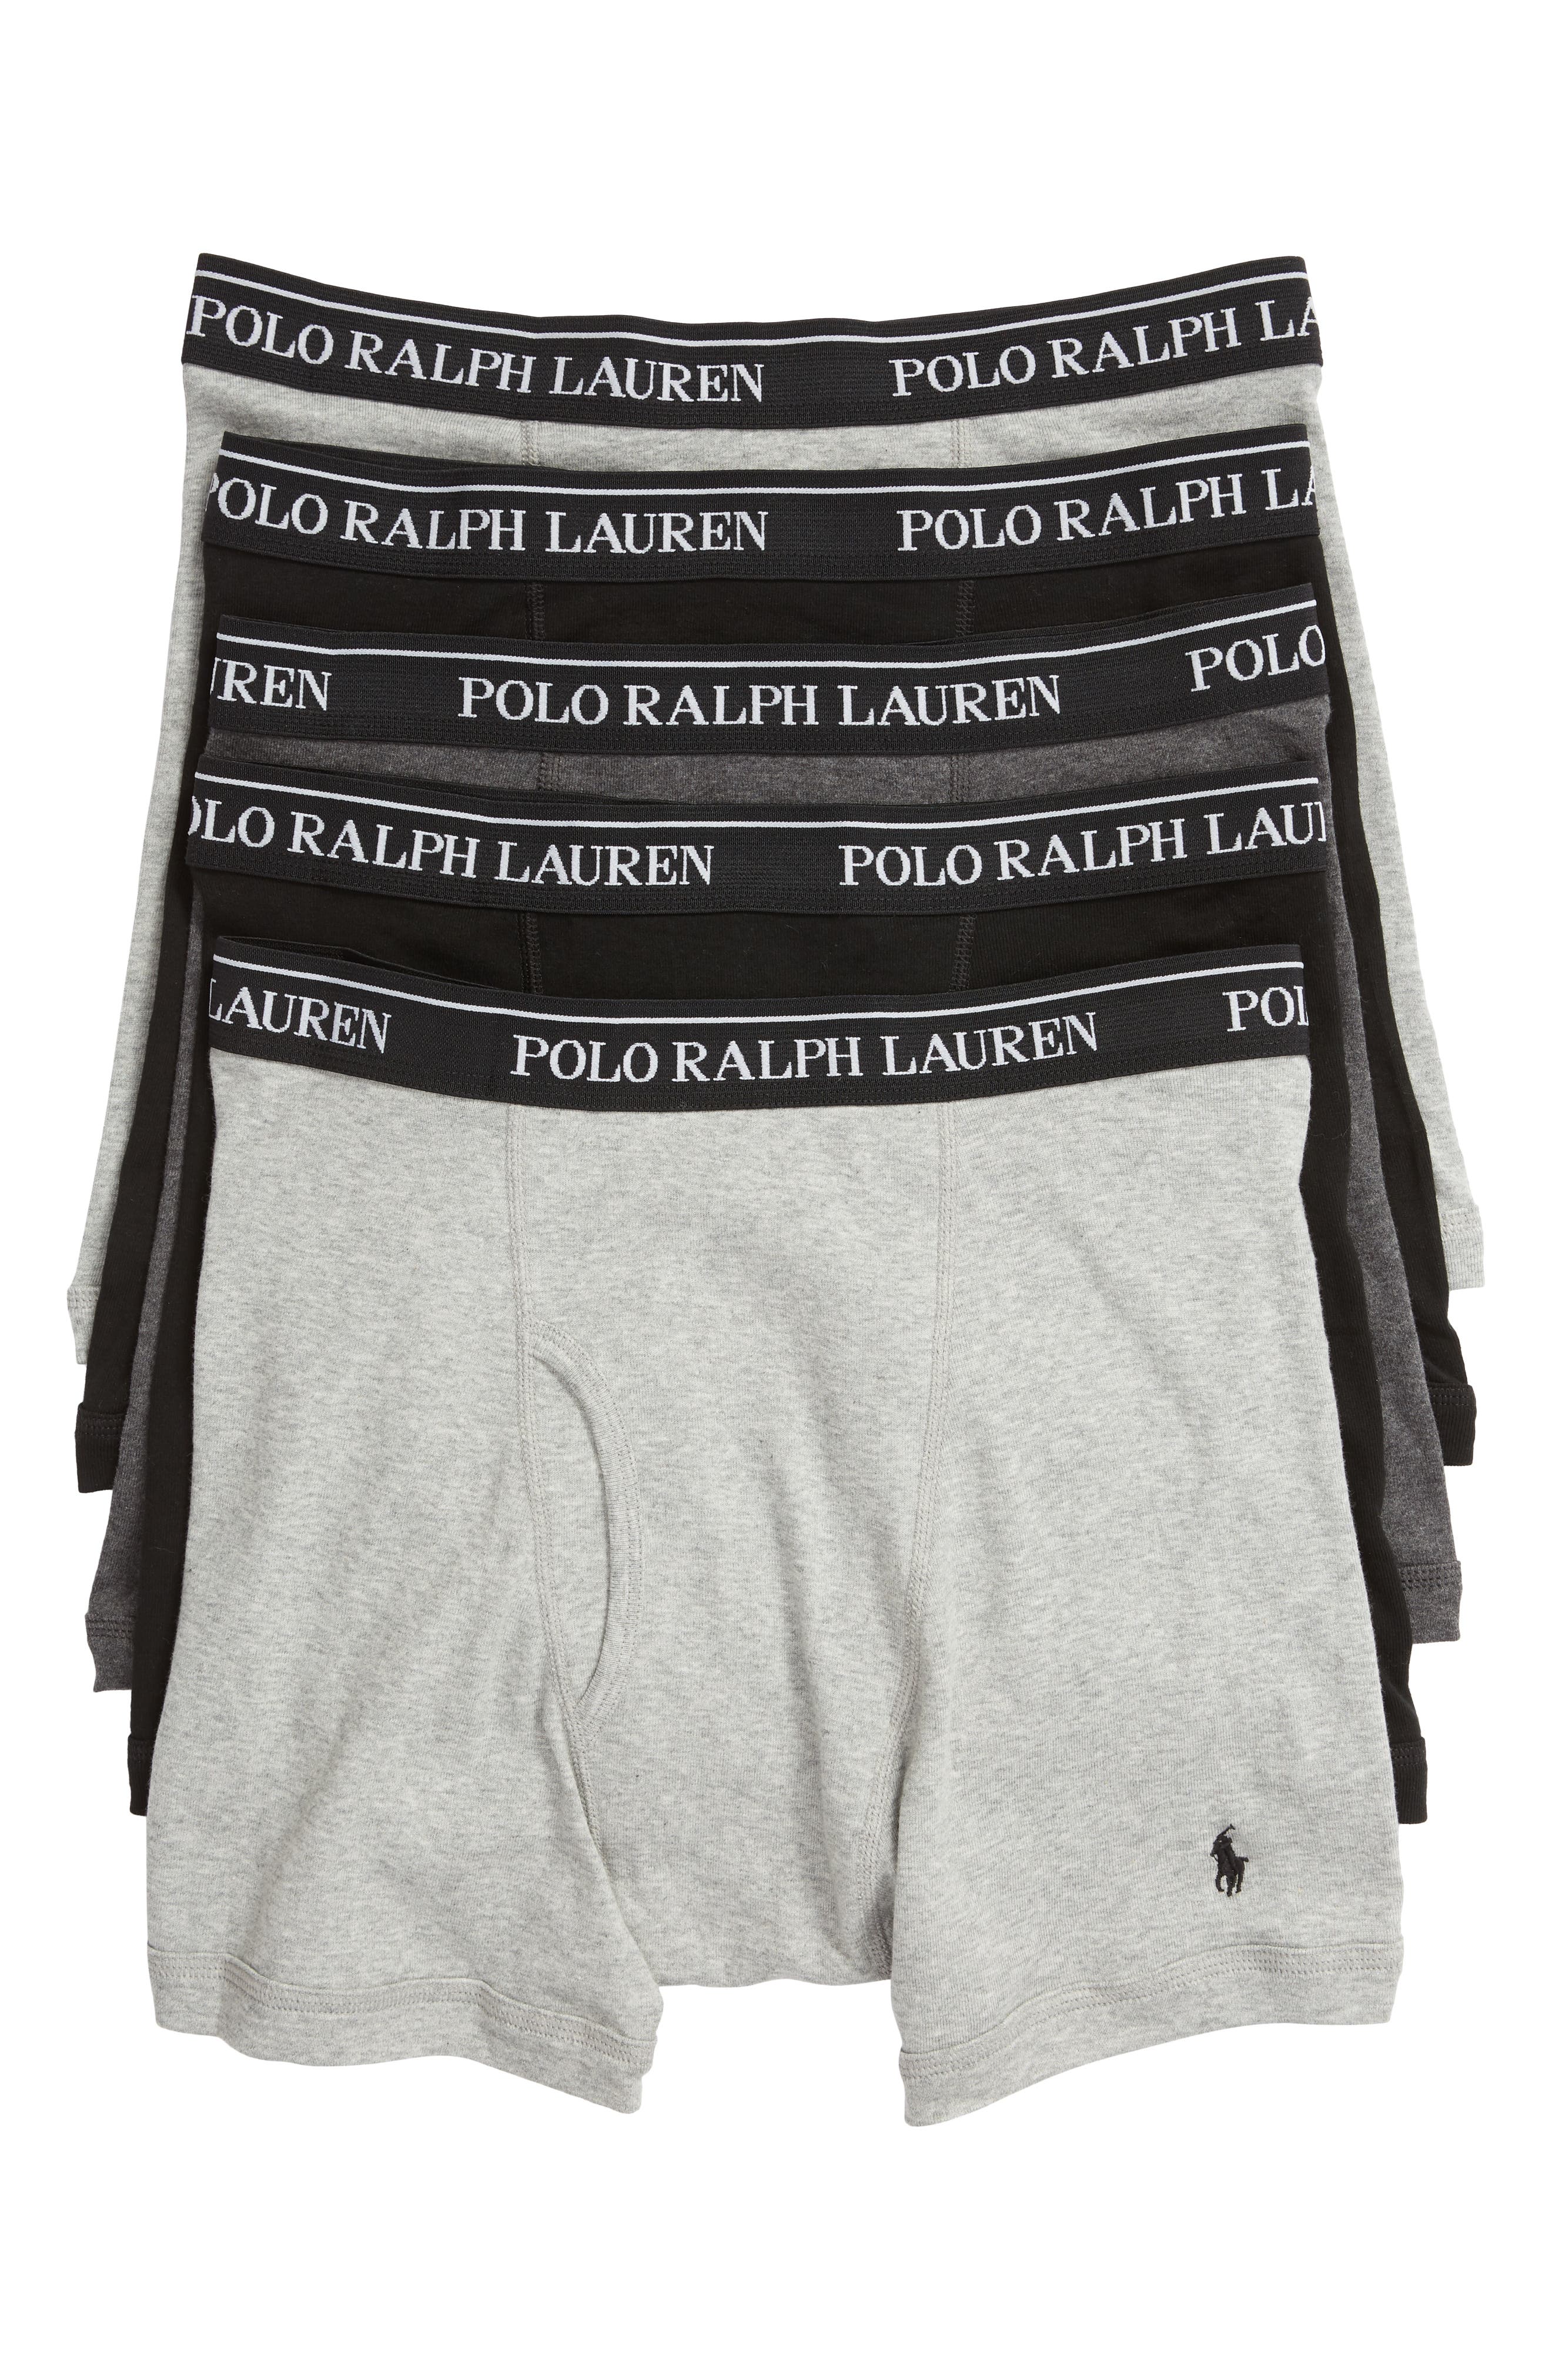 Polo Ralph Lauren 2 Pack Trunks in Black for Men Mens Clothing Underwear Boxers 